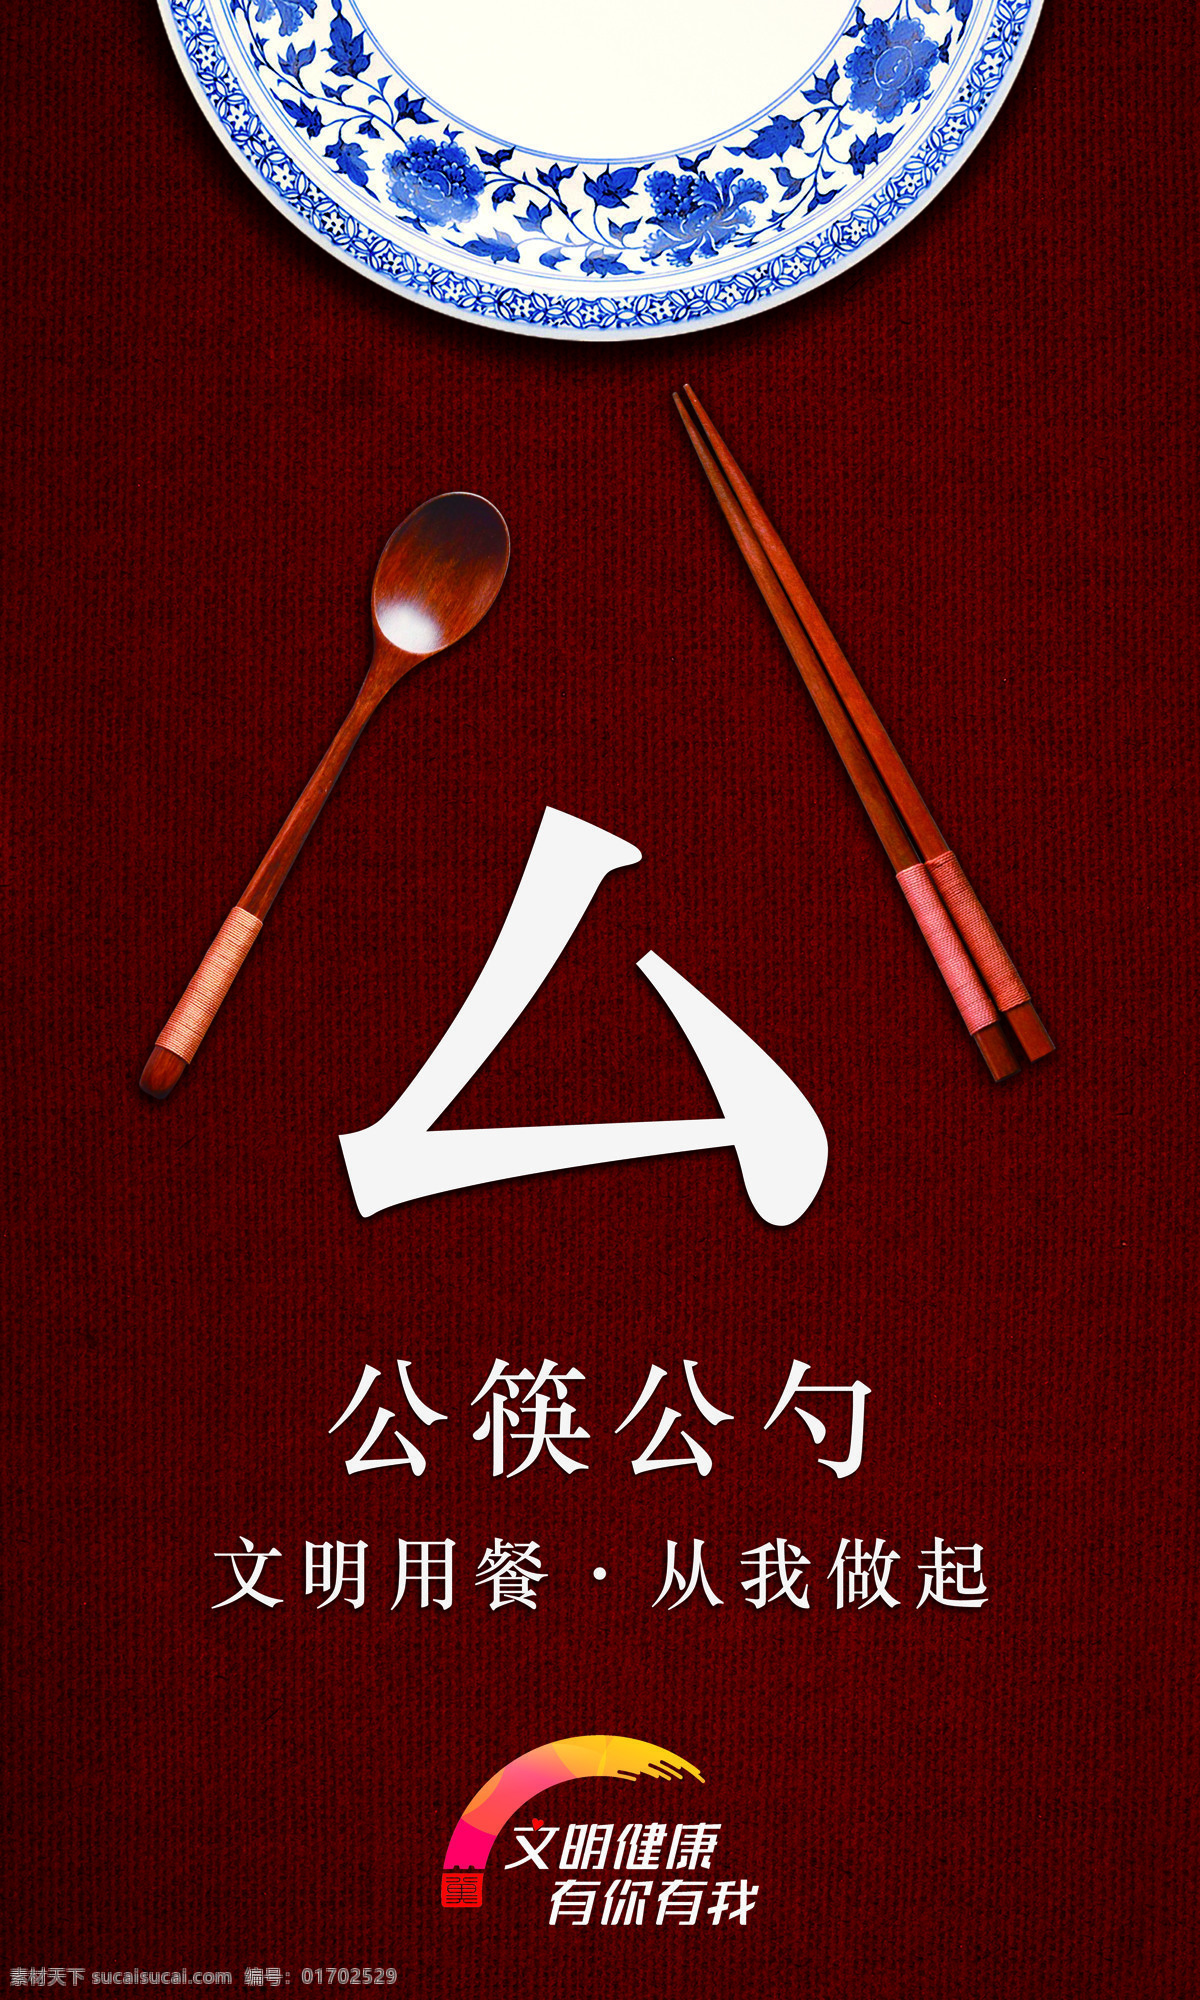 文明用餐 从我做起图片 文明 健康 公筷 公益广告 展板 海报 展板模板